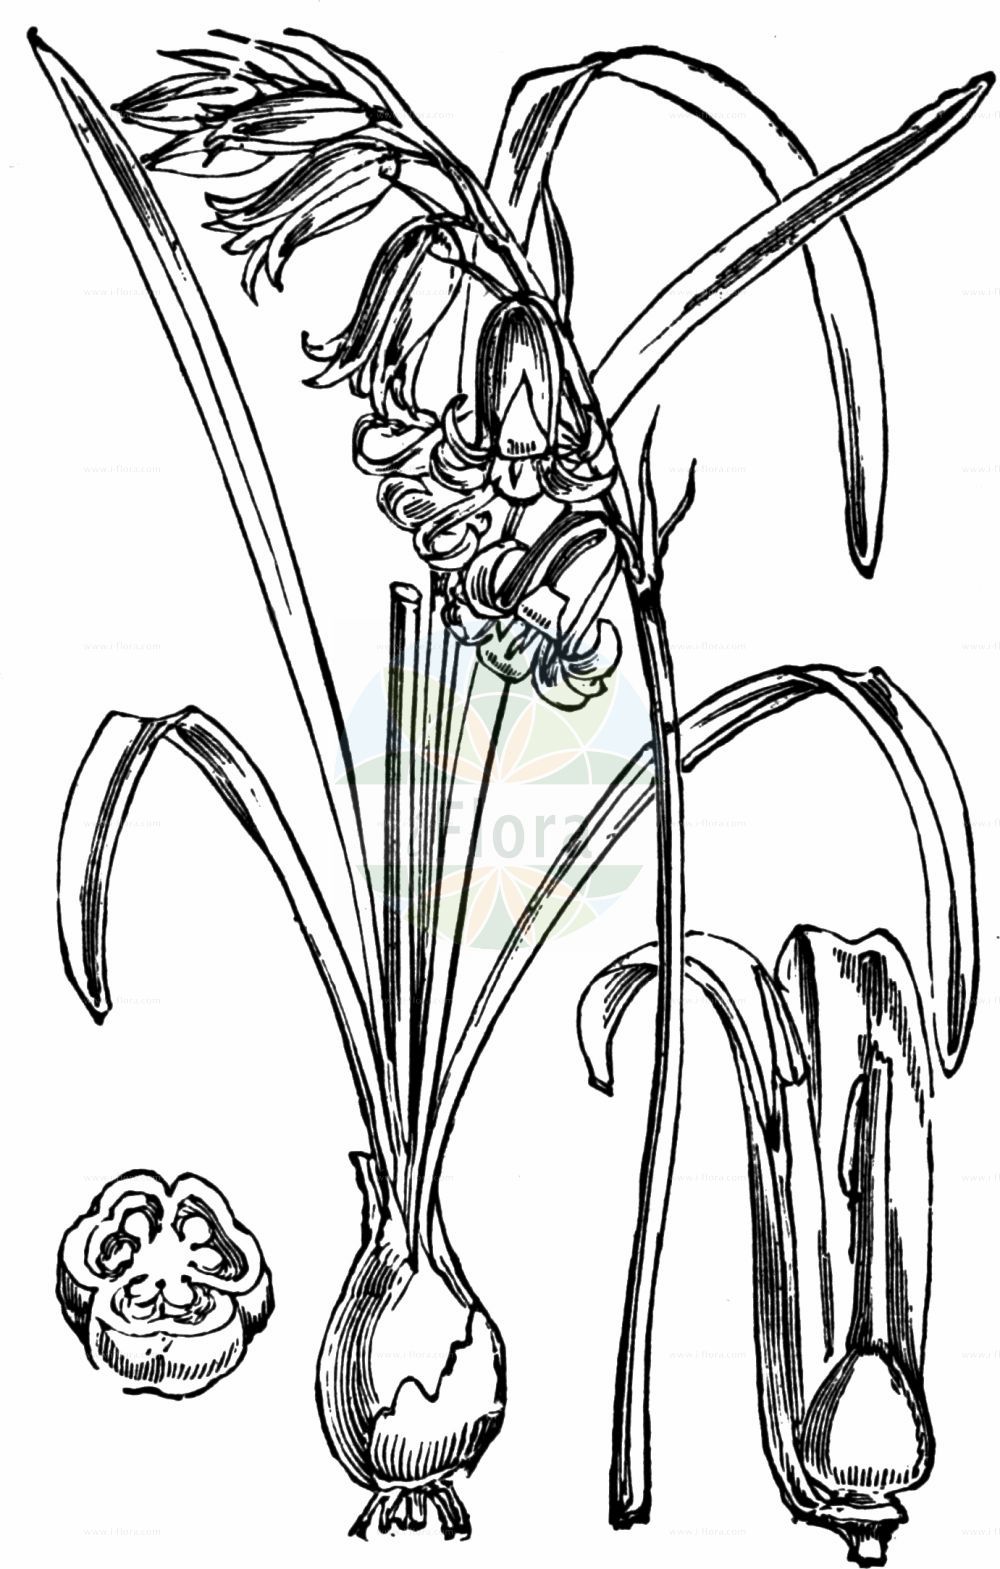 Historische Abbildung von Hyacinthoides non-scripta agg. (Atlantisches Hasenglöckchen - Bluebell). Das Bild zeigt Blatt, Bluete, Frucht und Same. ---- Historical Drawing of Hyacinthoides non-scripta agg. (Atlantisches Hasenglöckchen - Bluebell). The image is showing leaf, flower, fruit and seed.(Hyacinthoides non-scripta agg.,Atlantisches Hasenglöckchen,Bluebell,Atlantisches Hasengloeckchen,Englisches Hasengloeckchen,Bluebell,Wild Hyacinth,Hyacinthoides,Hasenglöckchen,Bluebells,Asparagaceae,Spargelgewächse,Asparagus family,Blatt,Bluete,Frucht,Same,leaf,flower,fruit,seed,Fitch et al. (1880))